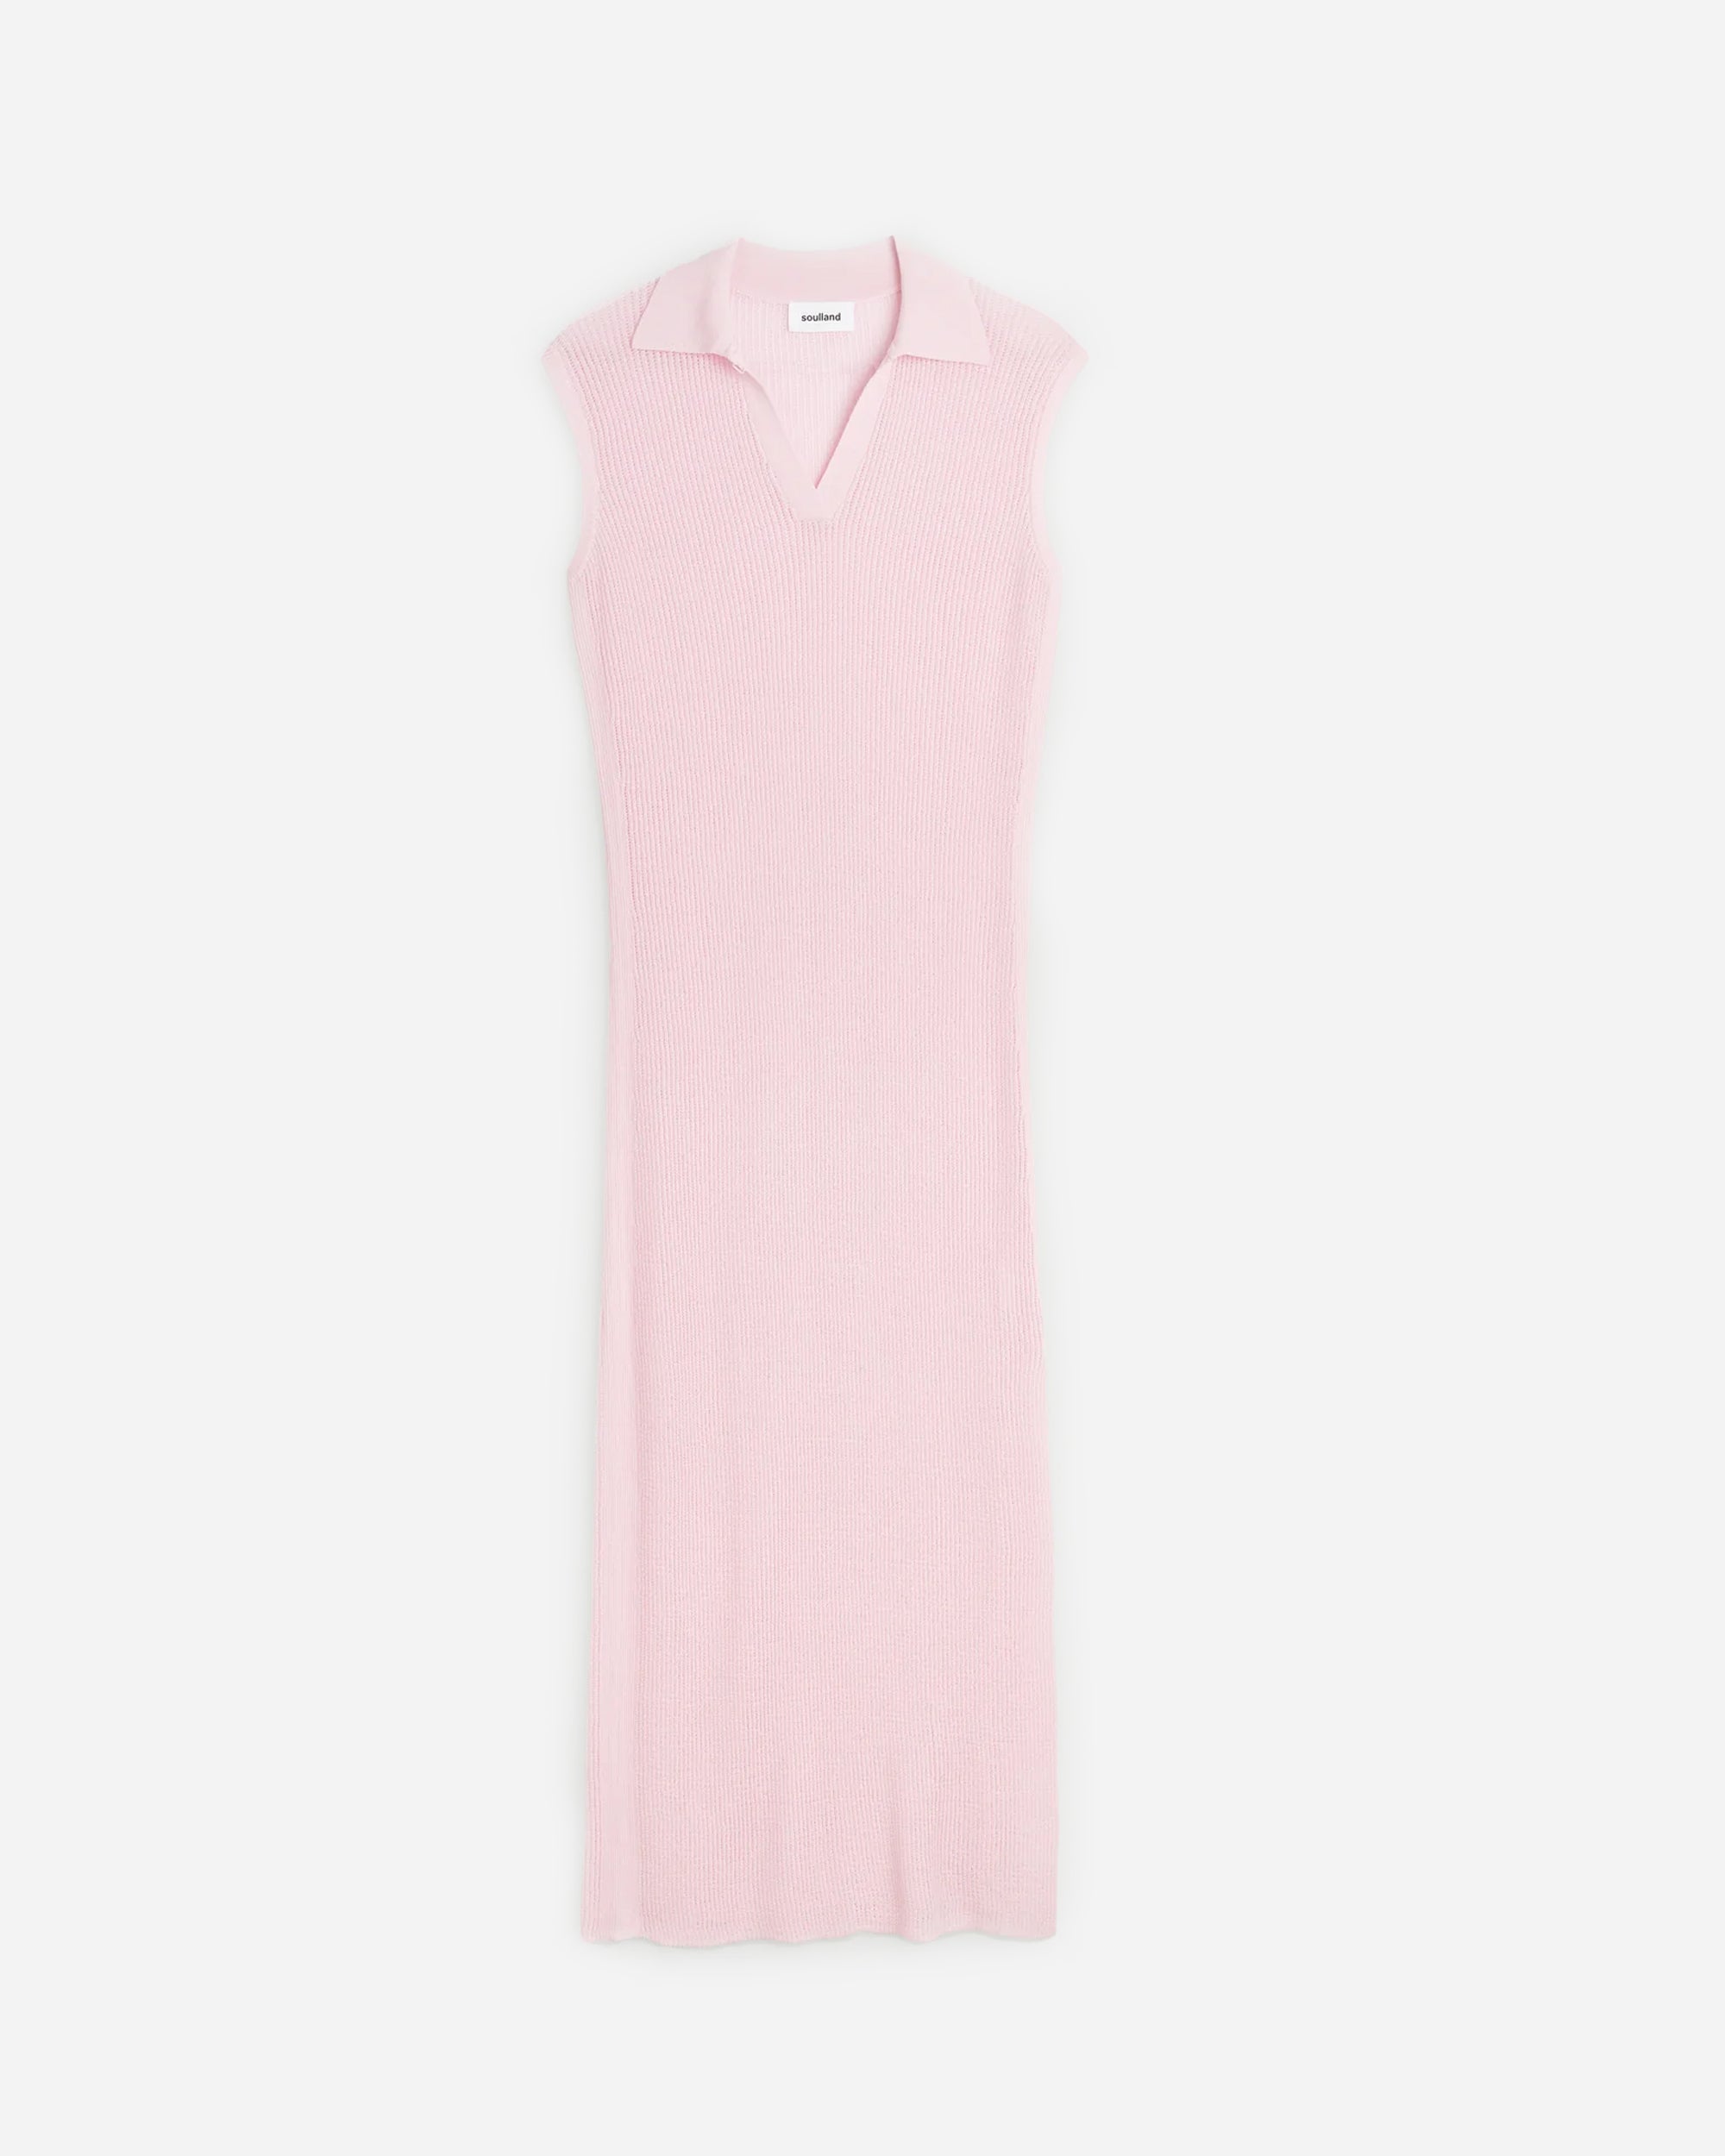 Soulland Nane dress Pink 31065-1157